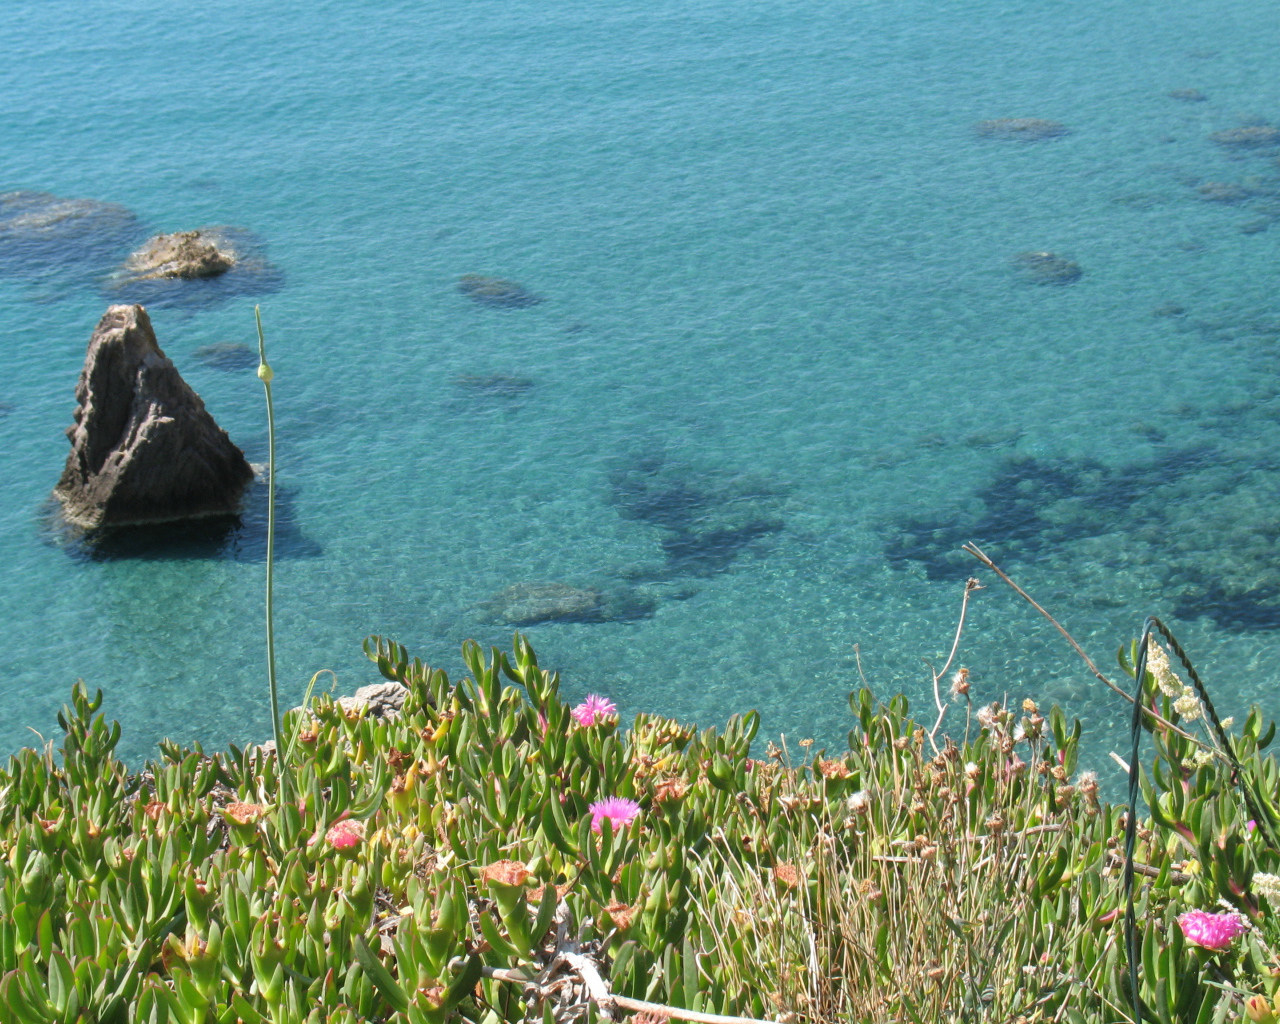 Цветы на фоне моря на острове Понца, Италия